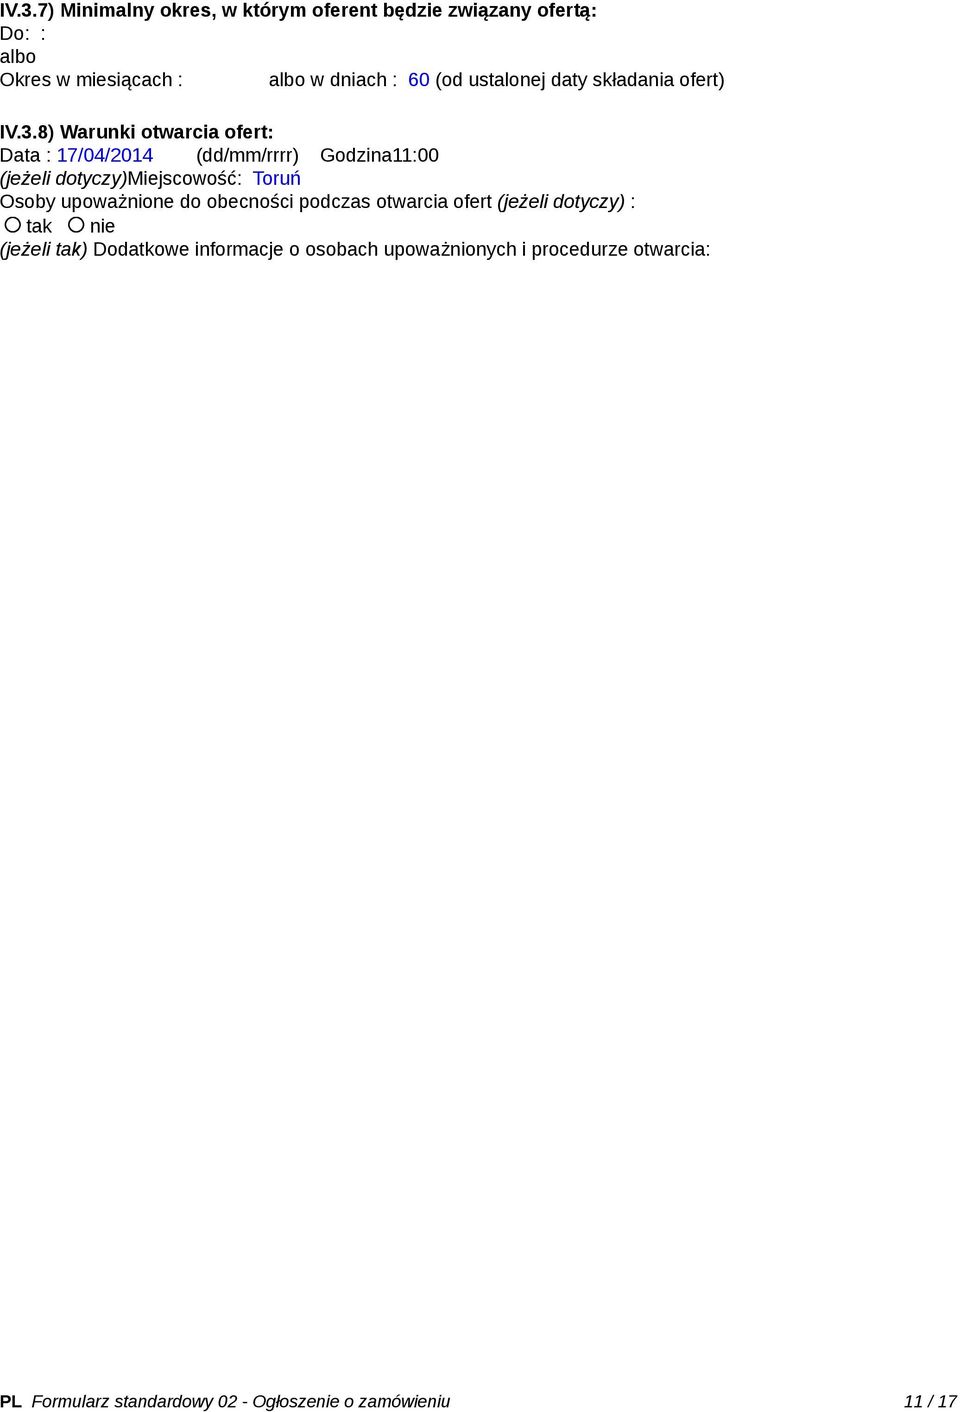 8) Warunki otwarcia ofert: Data : 17/04/2014 (dd/mm/rrrr) Godzina11:00 (jeżeli dotyczy)miejscowość: Toruń Osoby